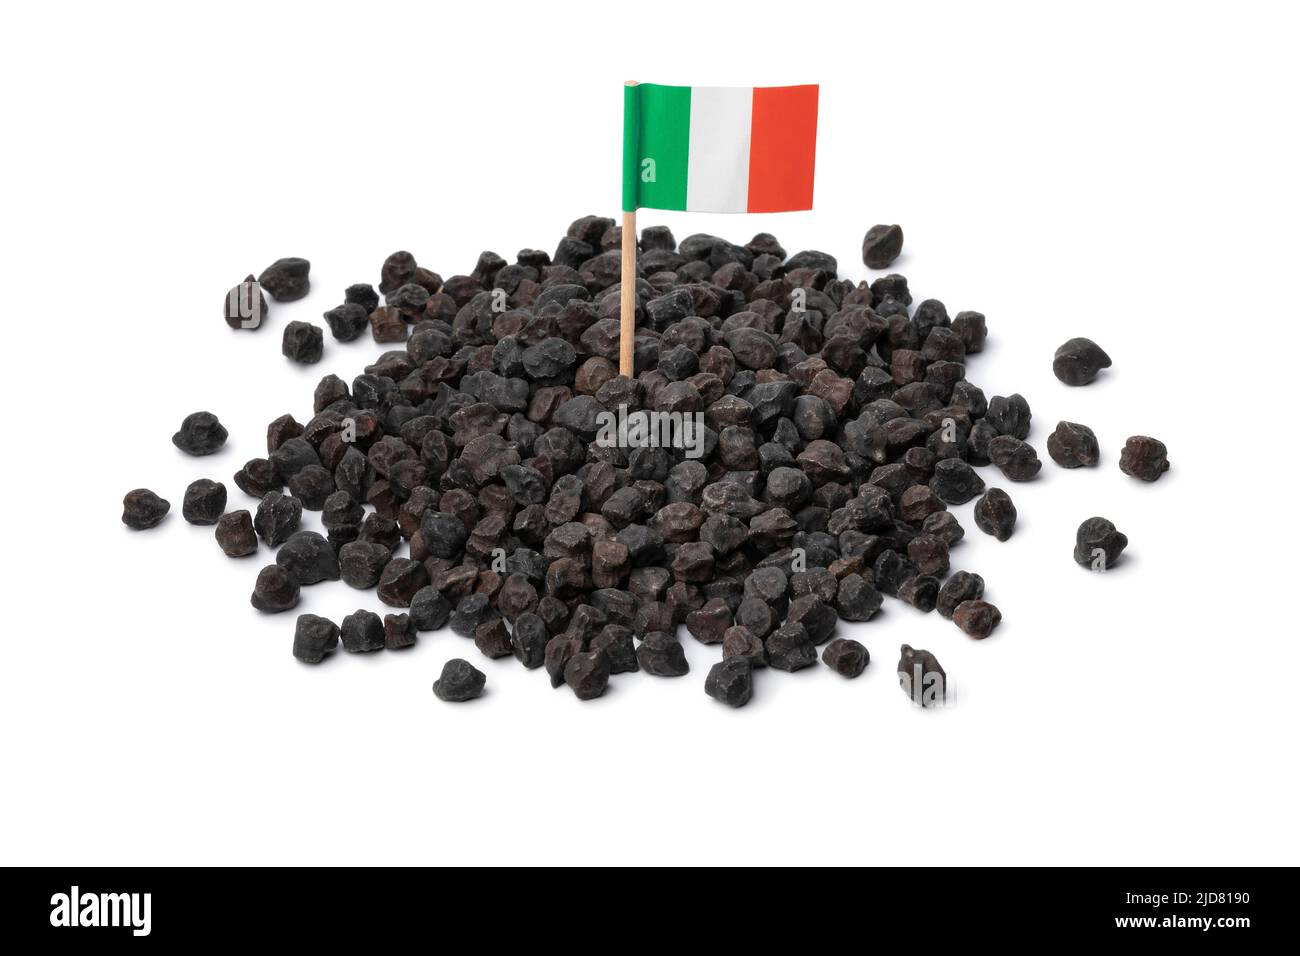 Tas de pois chiches noirs Murgia, ceci nero, également connu sous le nom de cece del solco dritto , avec le drapeau italien en haut isolé sur fond blanc Banque D'Images